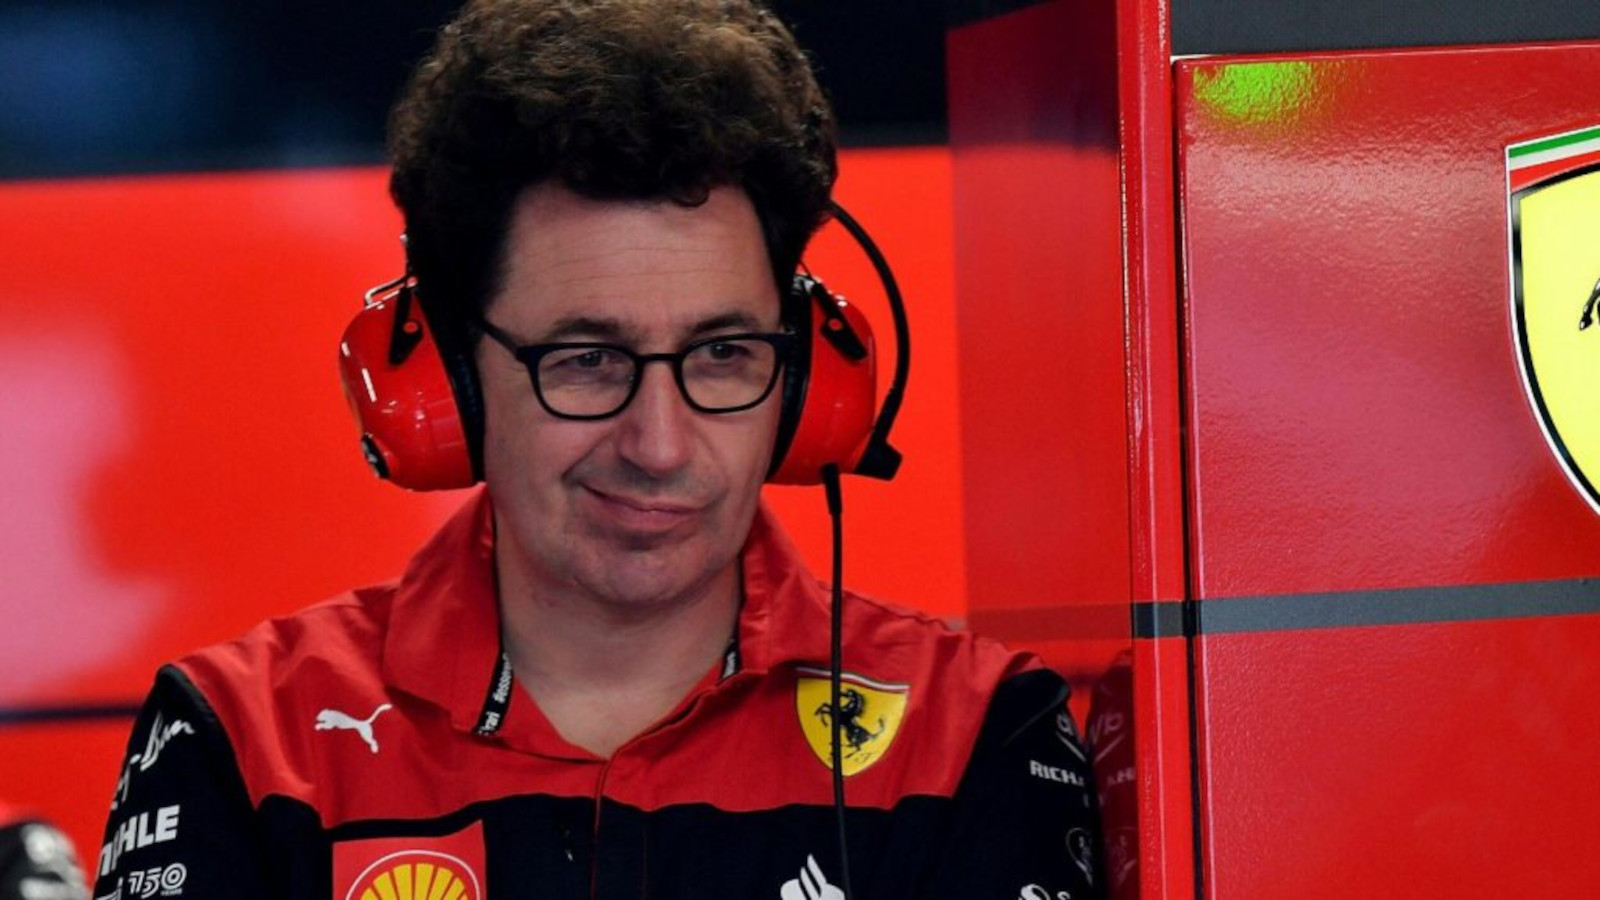 Szef zespołu Ferrari Mattia Binotto w garażu ze słuchawkami i egzotycznym wyglądem.  Montreal czerwiec 2022